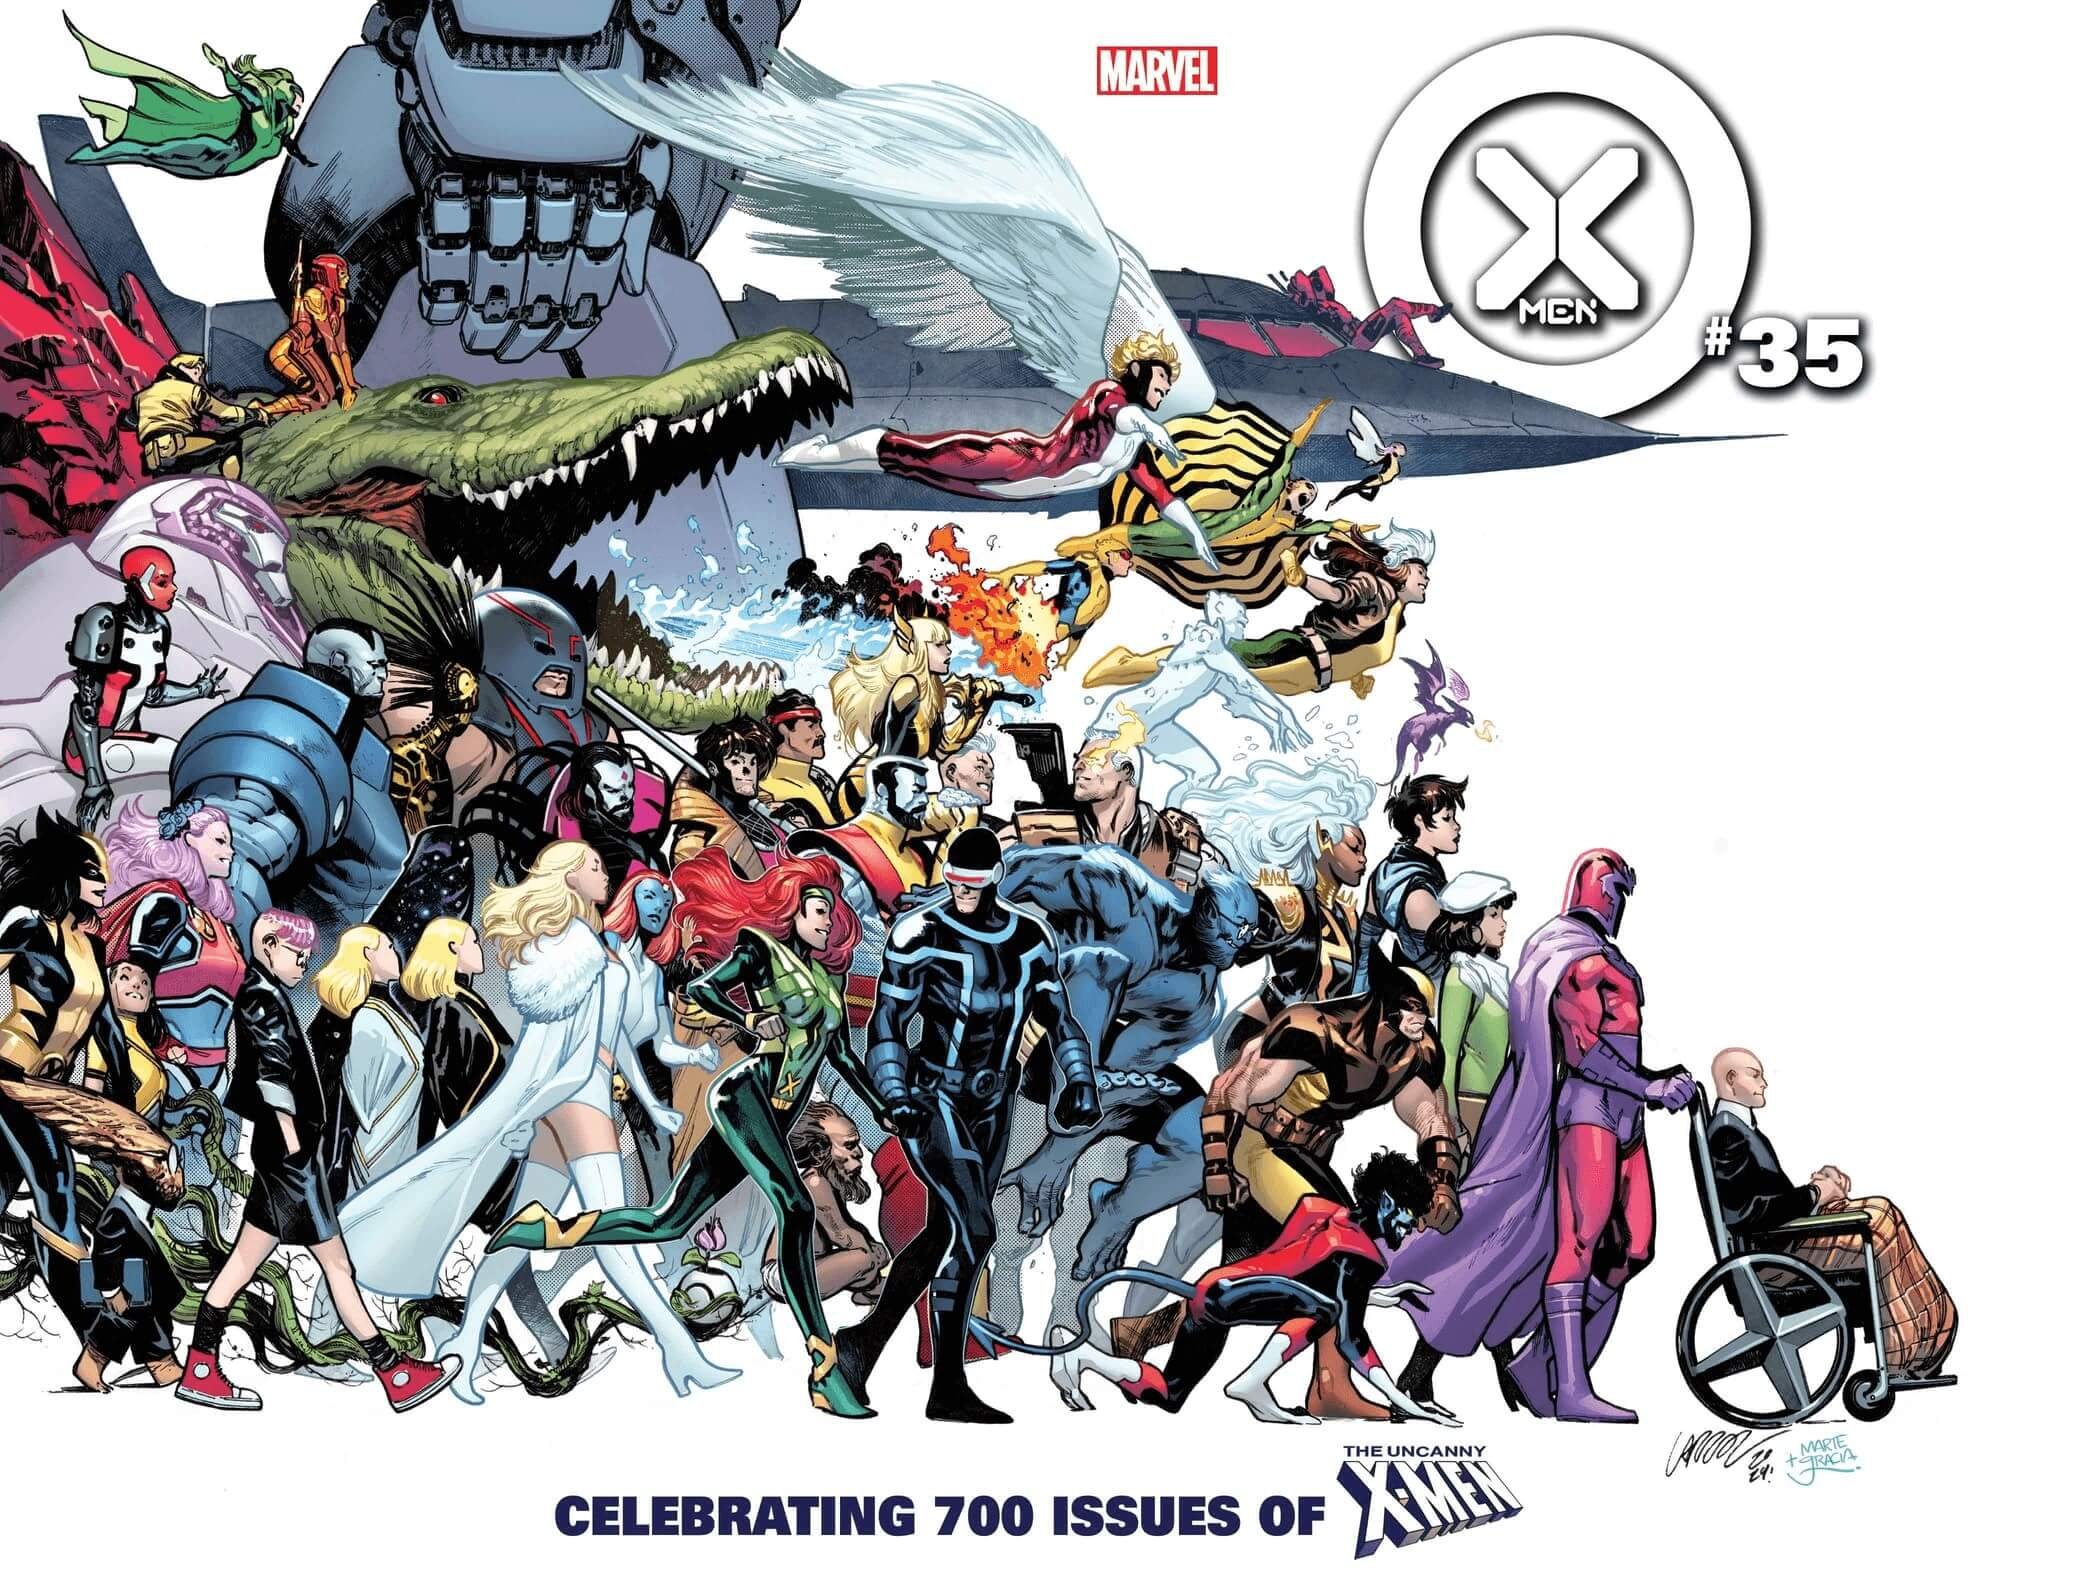 Couverture de Pepe Larraz tirée de X-Men 35, #700 selon la numérotation Legacy de Uncanny X-Men.